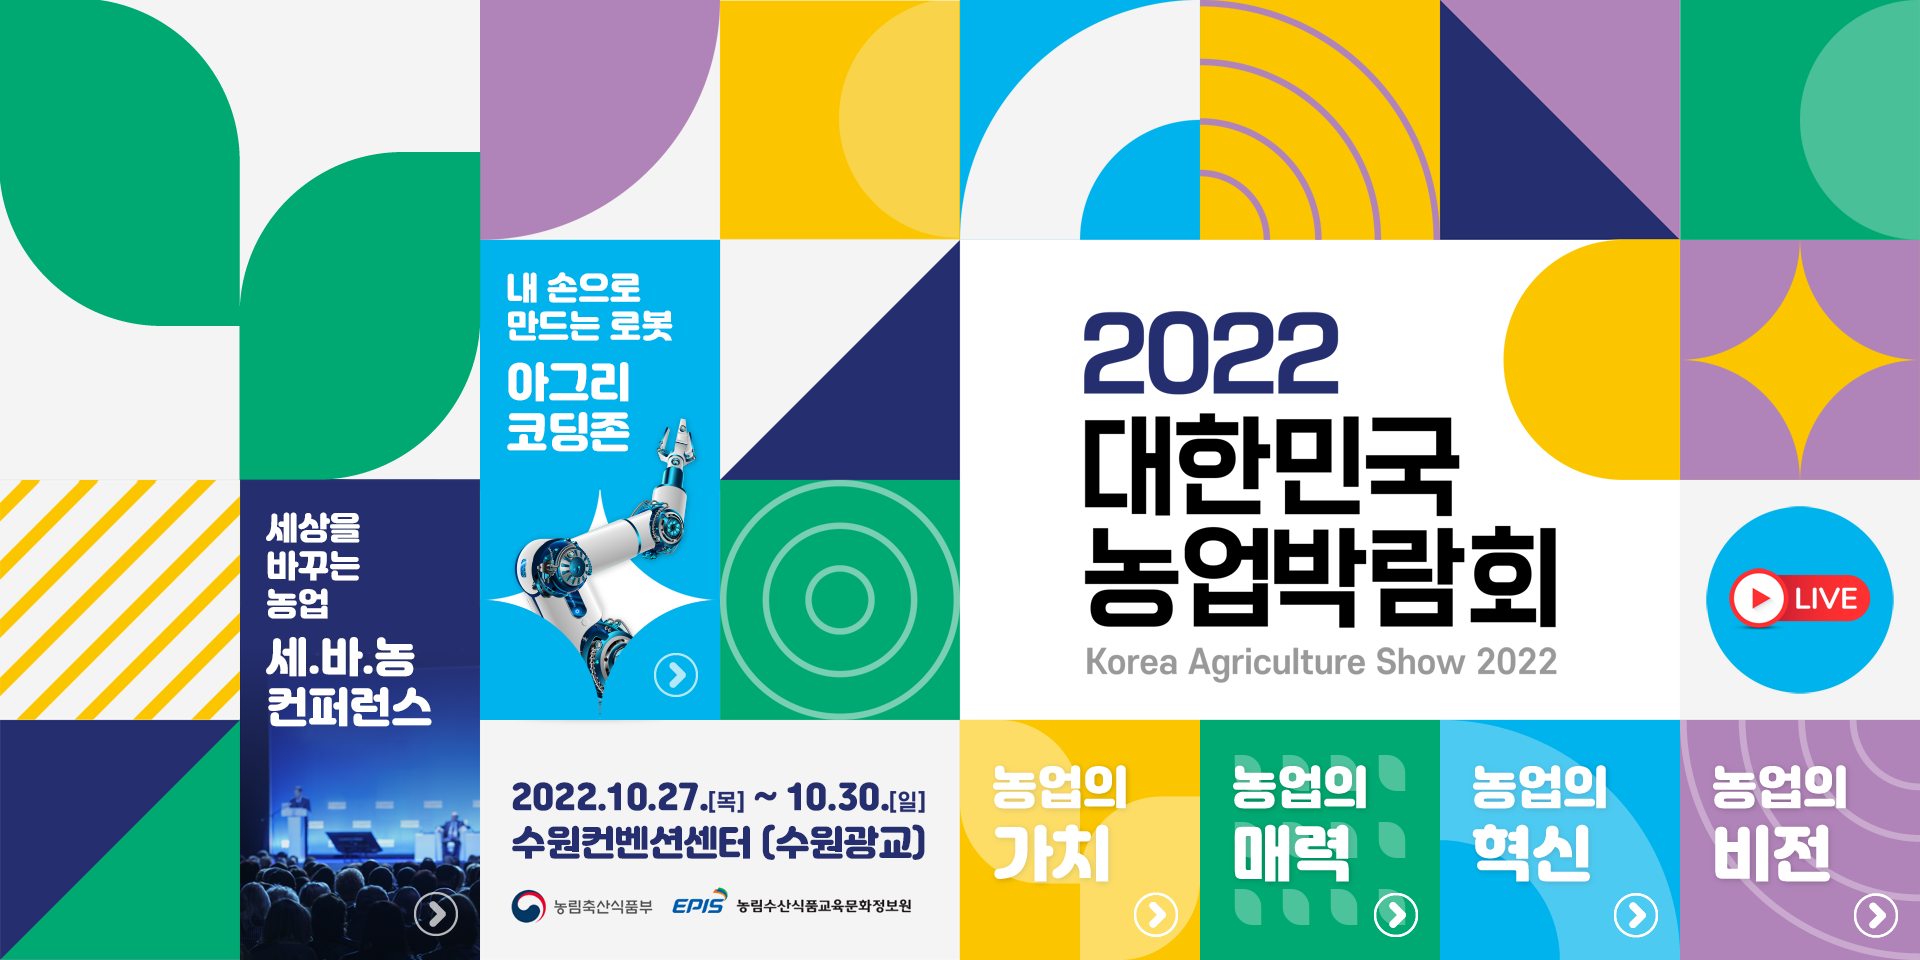 2022대한민국농업박람회 2022.10.27.목~10.30.일 수원컨벤션센터(수원광교)